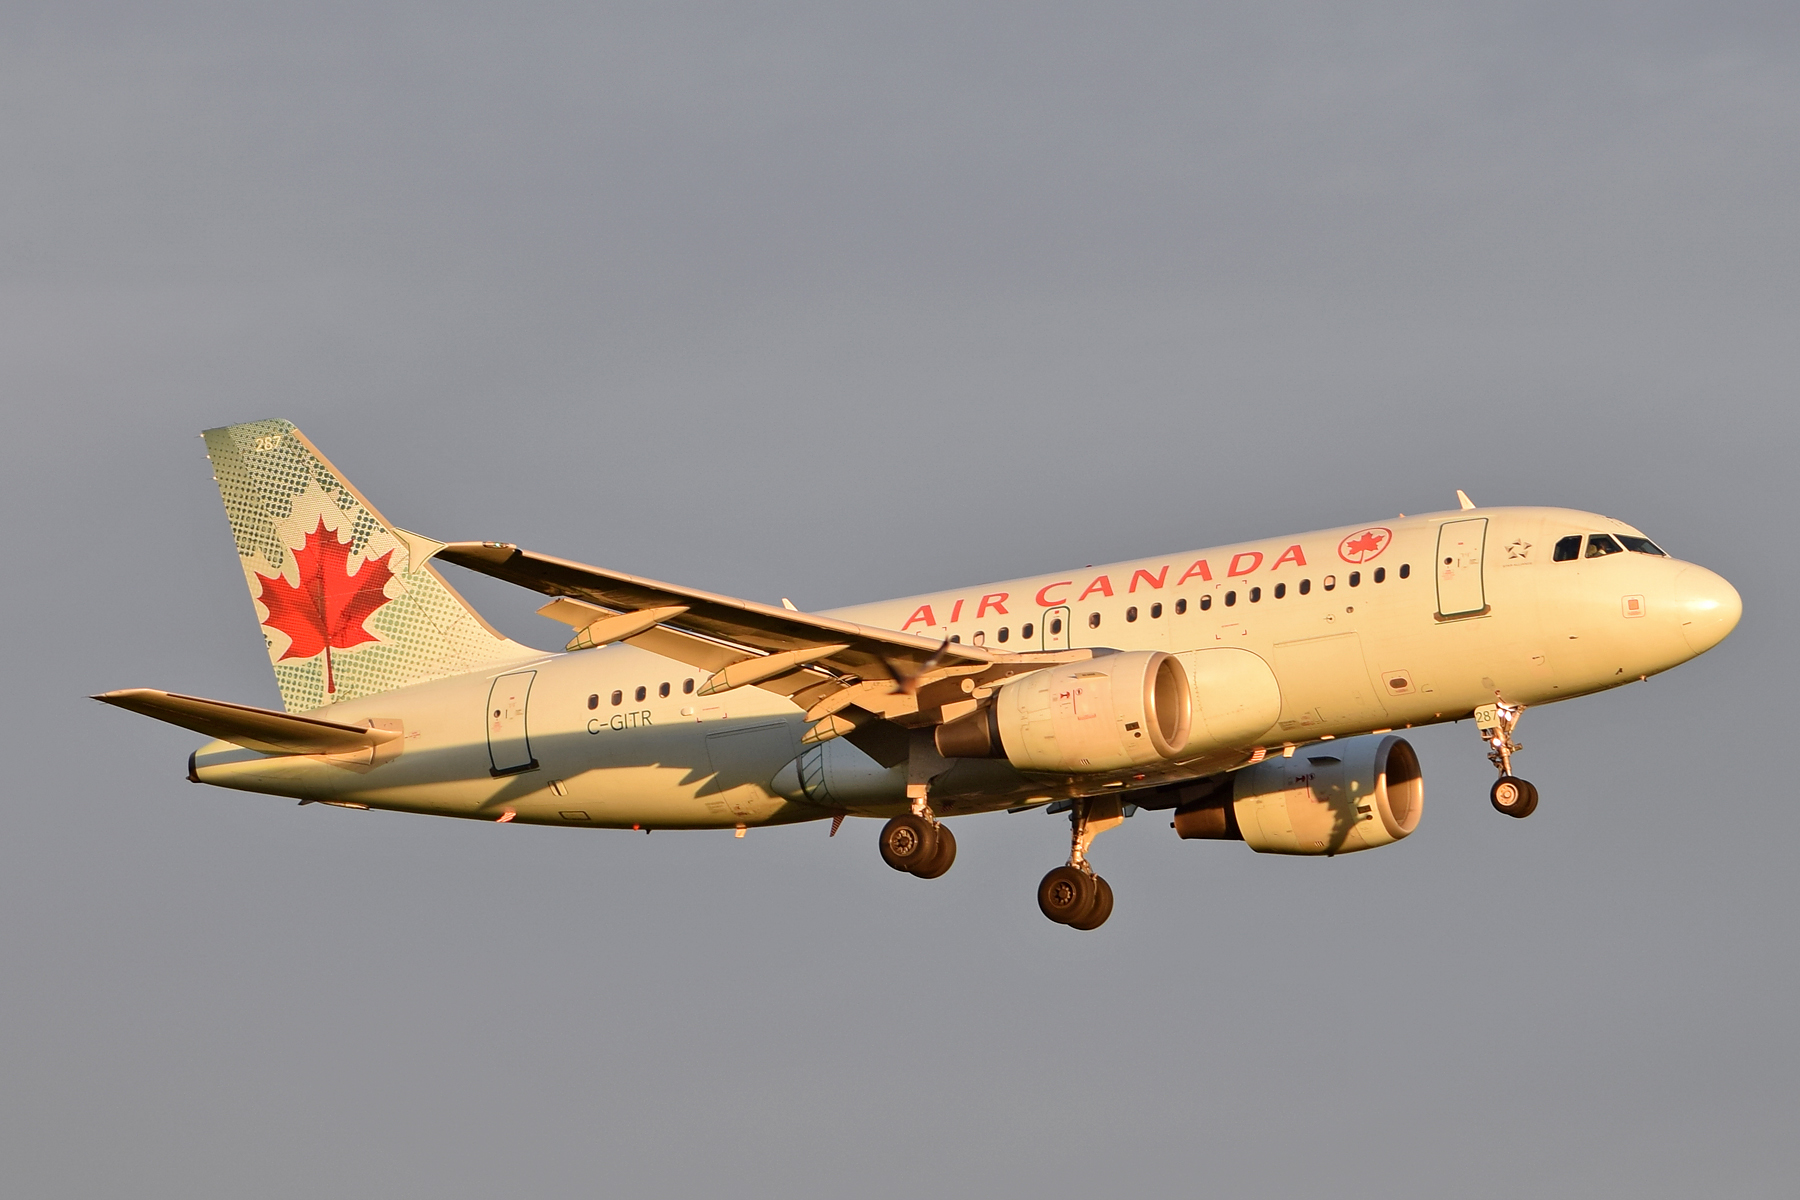 C-GITR Air Canada A318